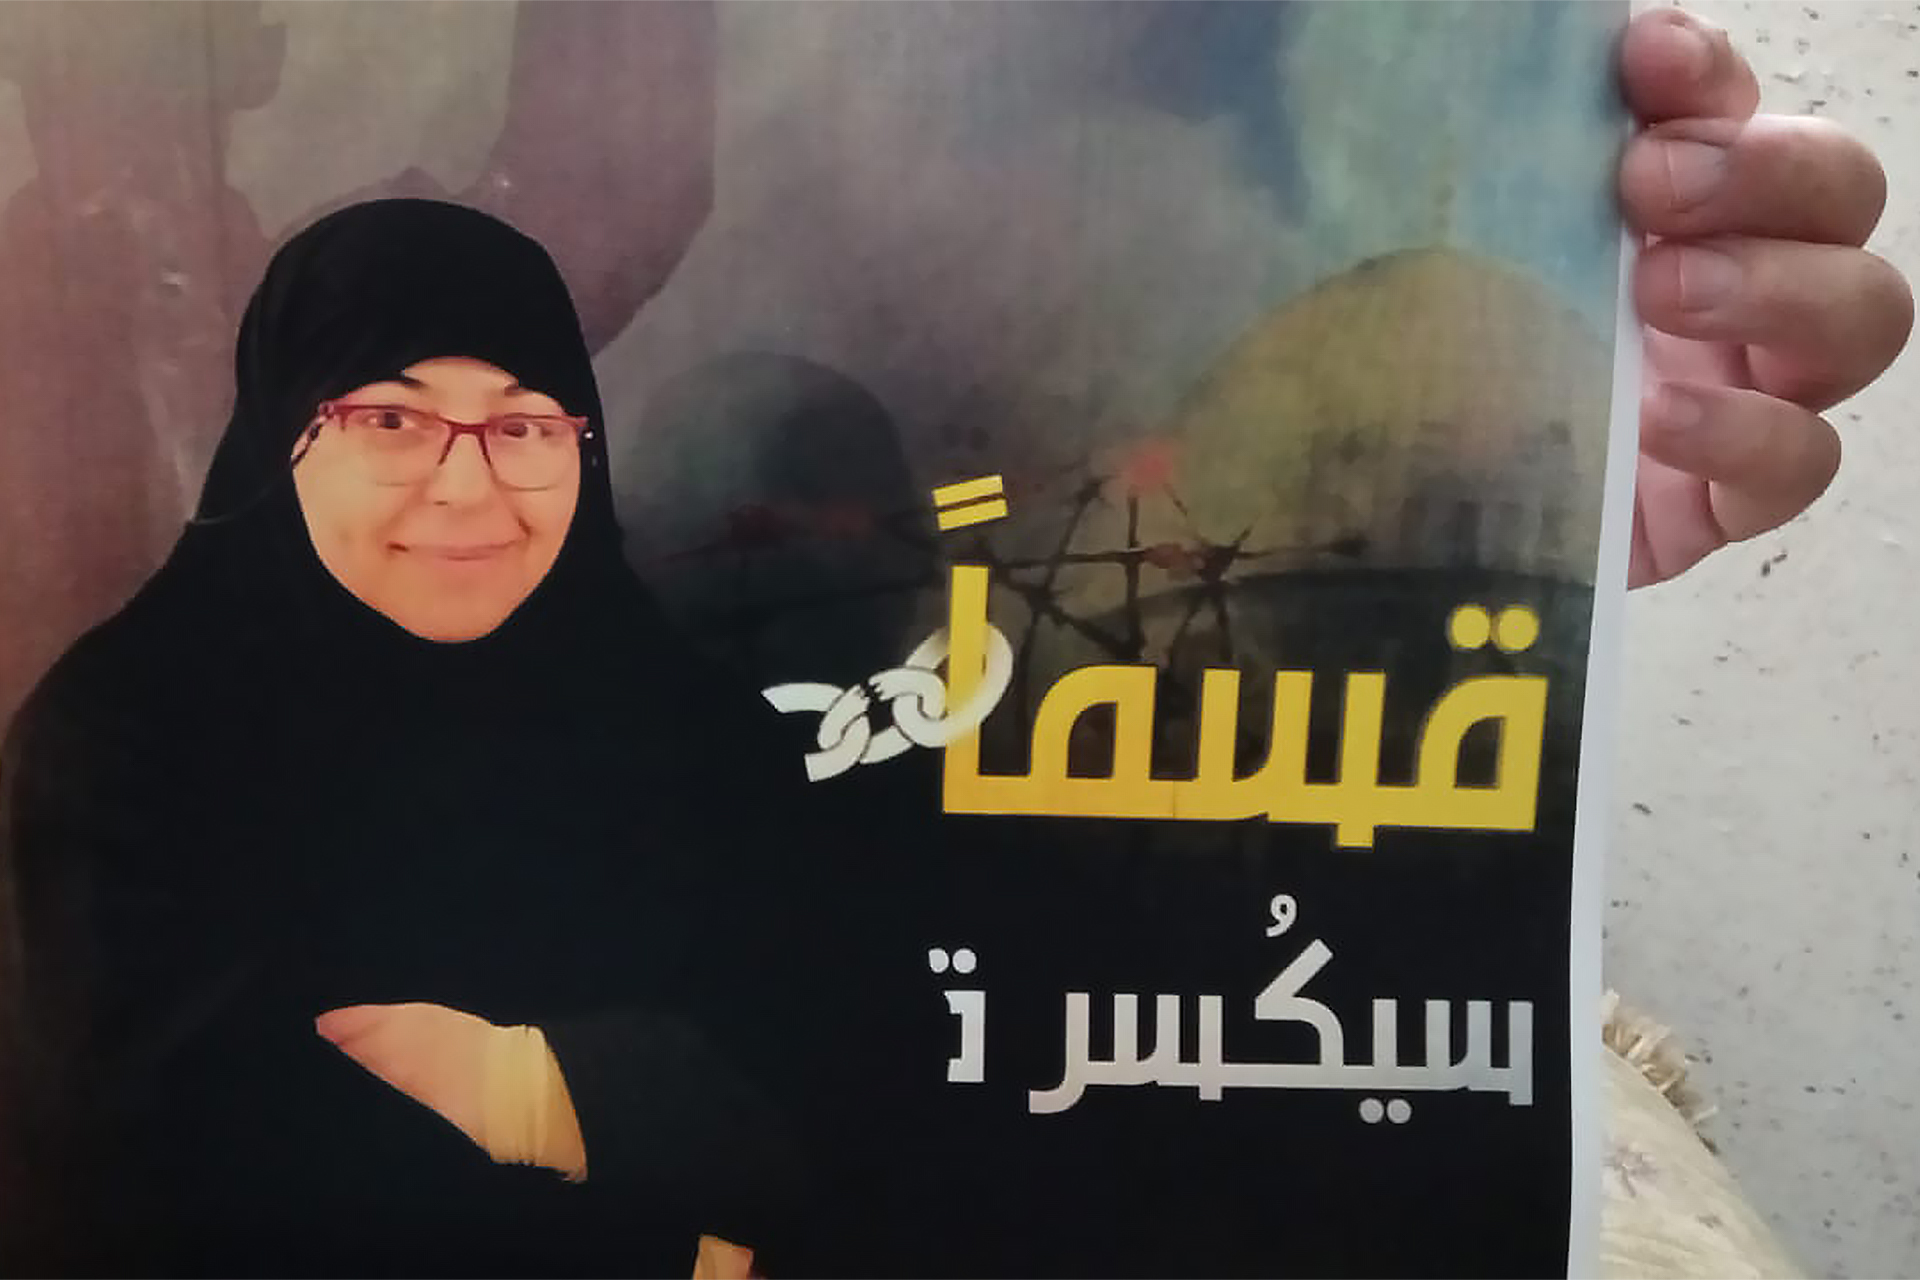 زهرة خدرج.. داعية فلسطينية مغيّبة قسرا في سجون الاحتلال | سياسة – البوكس نيوز